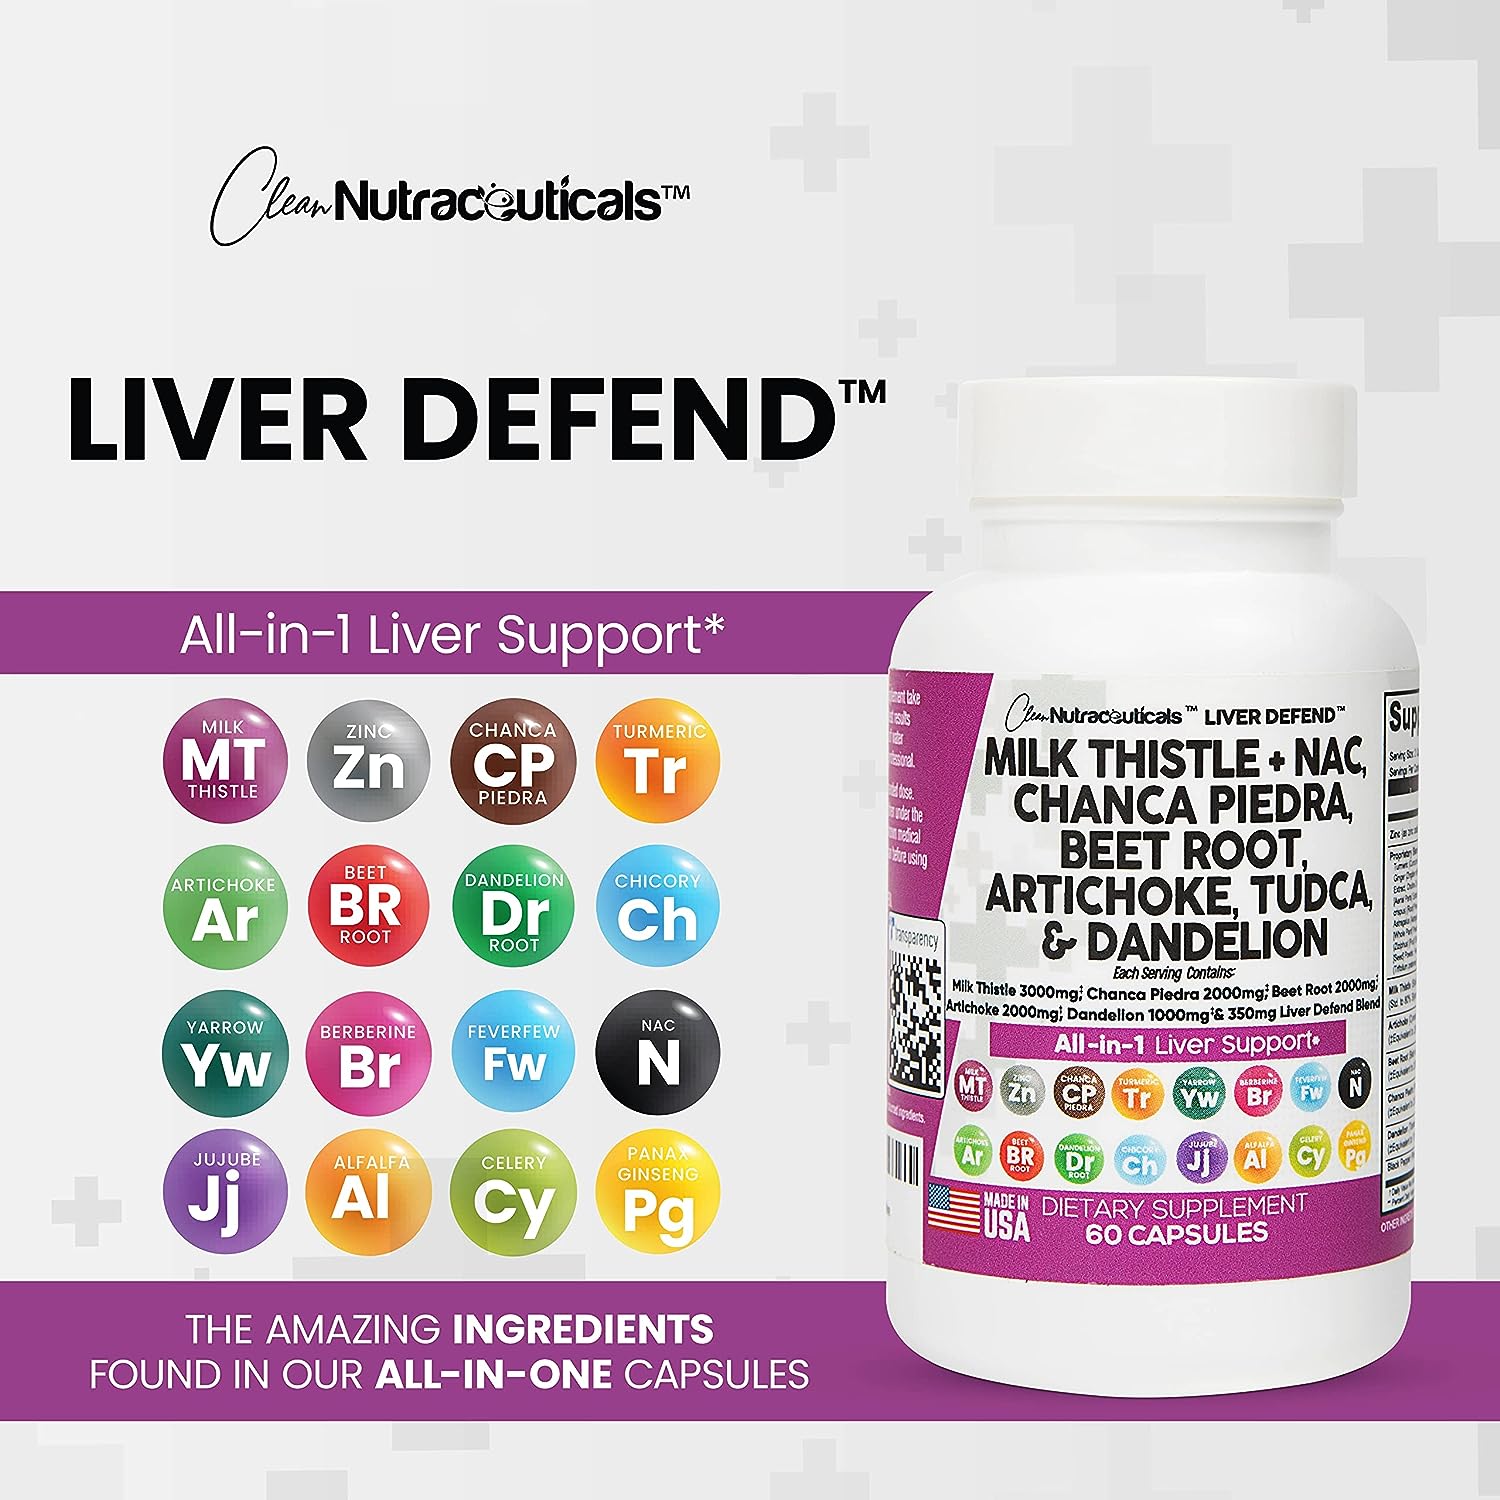 Liver Defend™